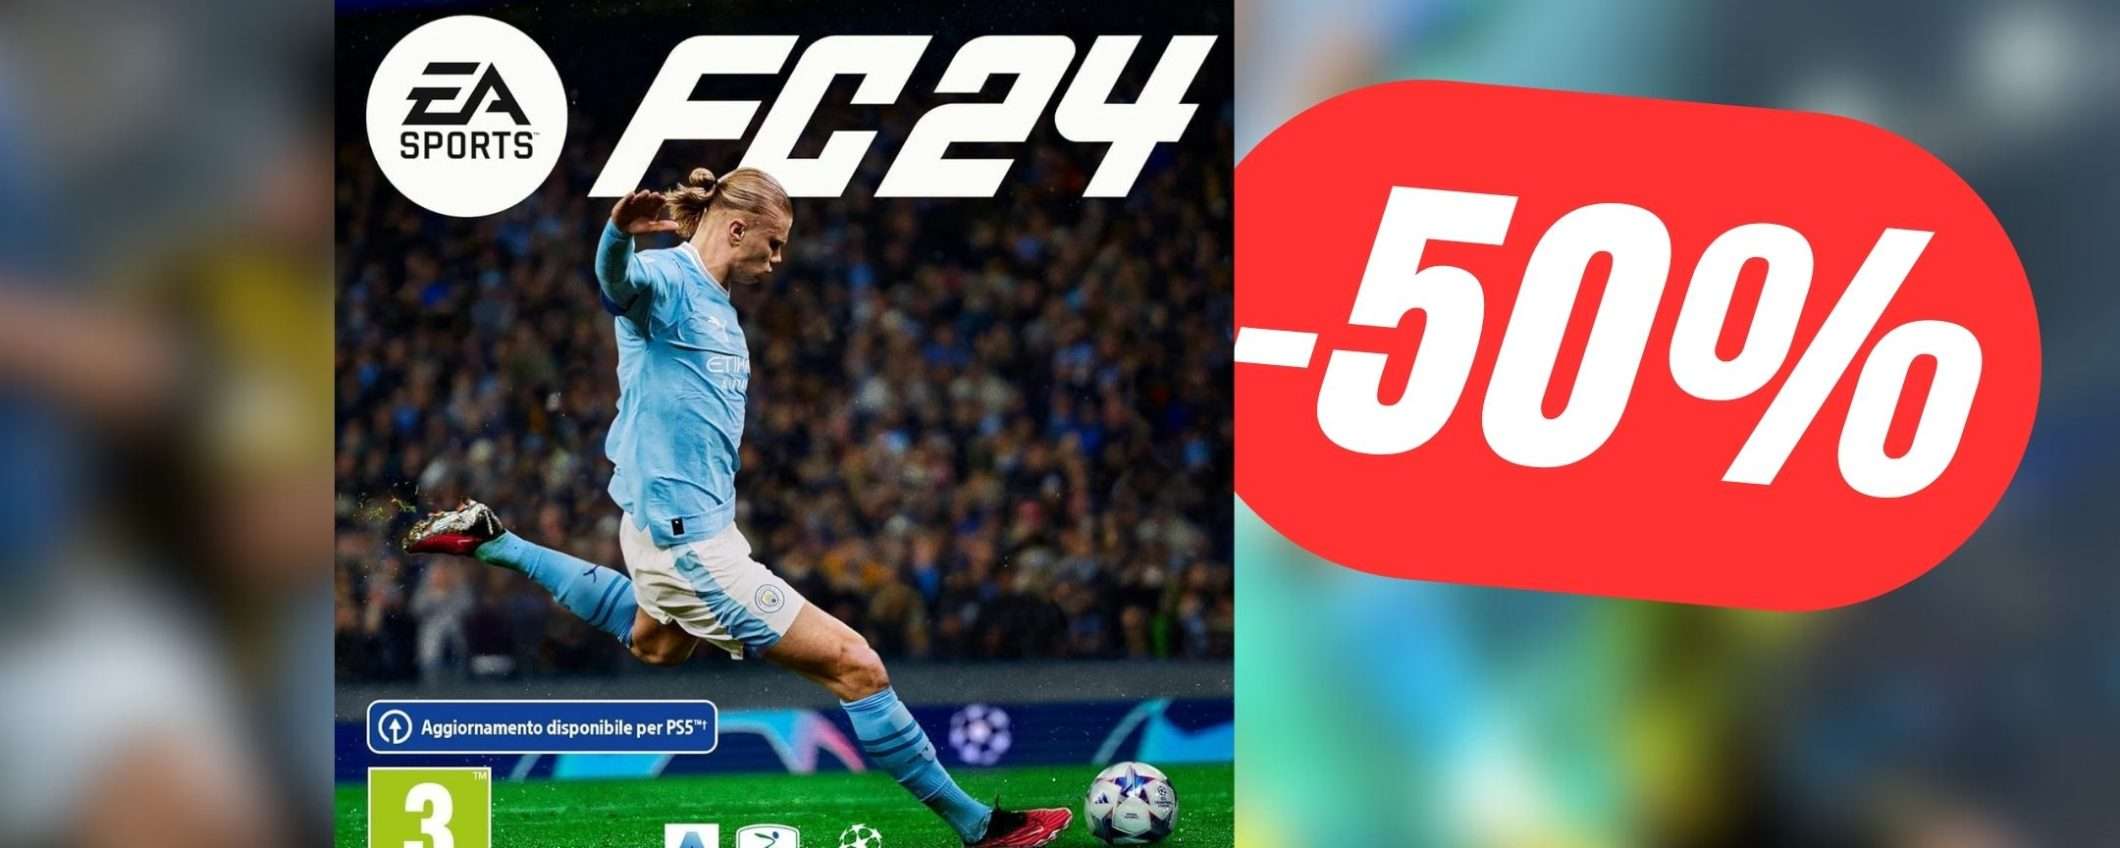 EA SPORTS FC 24 (Fifa 24) per PS4 è scontato del 50%: PREZZO FOLLE